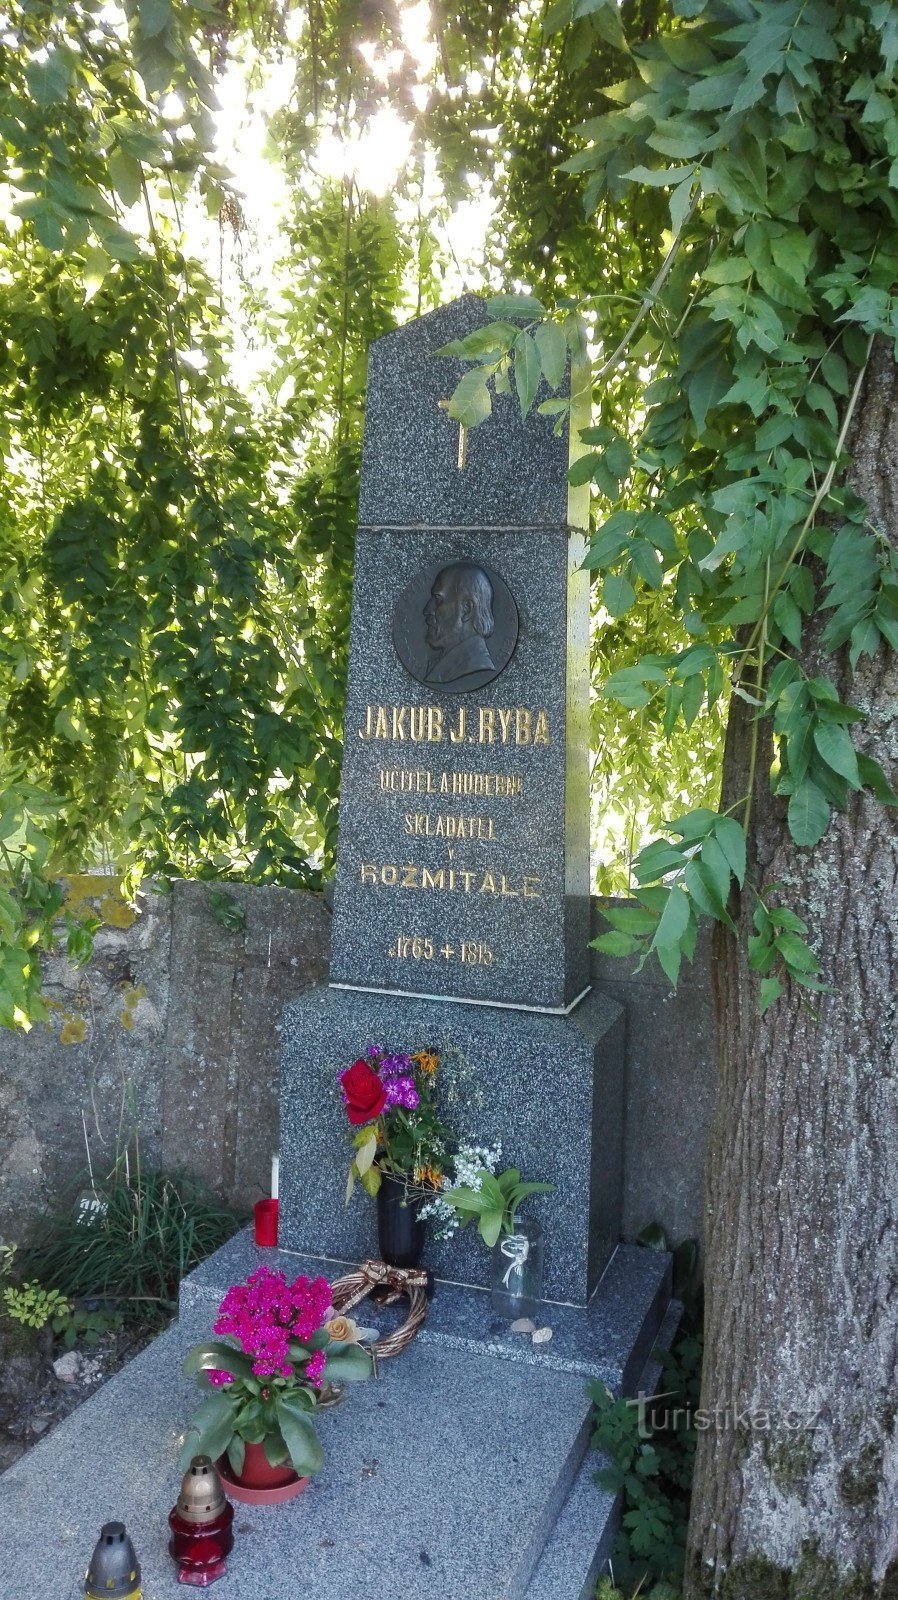 JJRyba emlékműve Staré Rožmitálban.